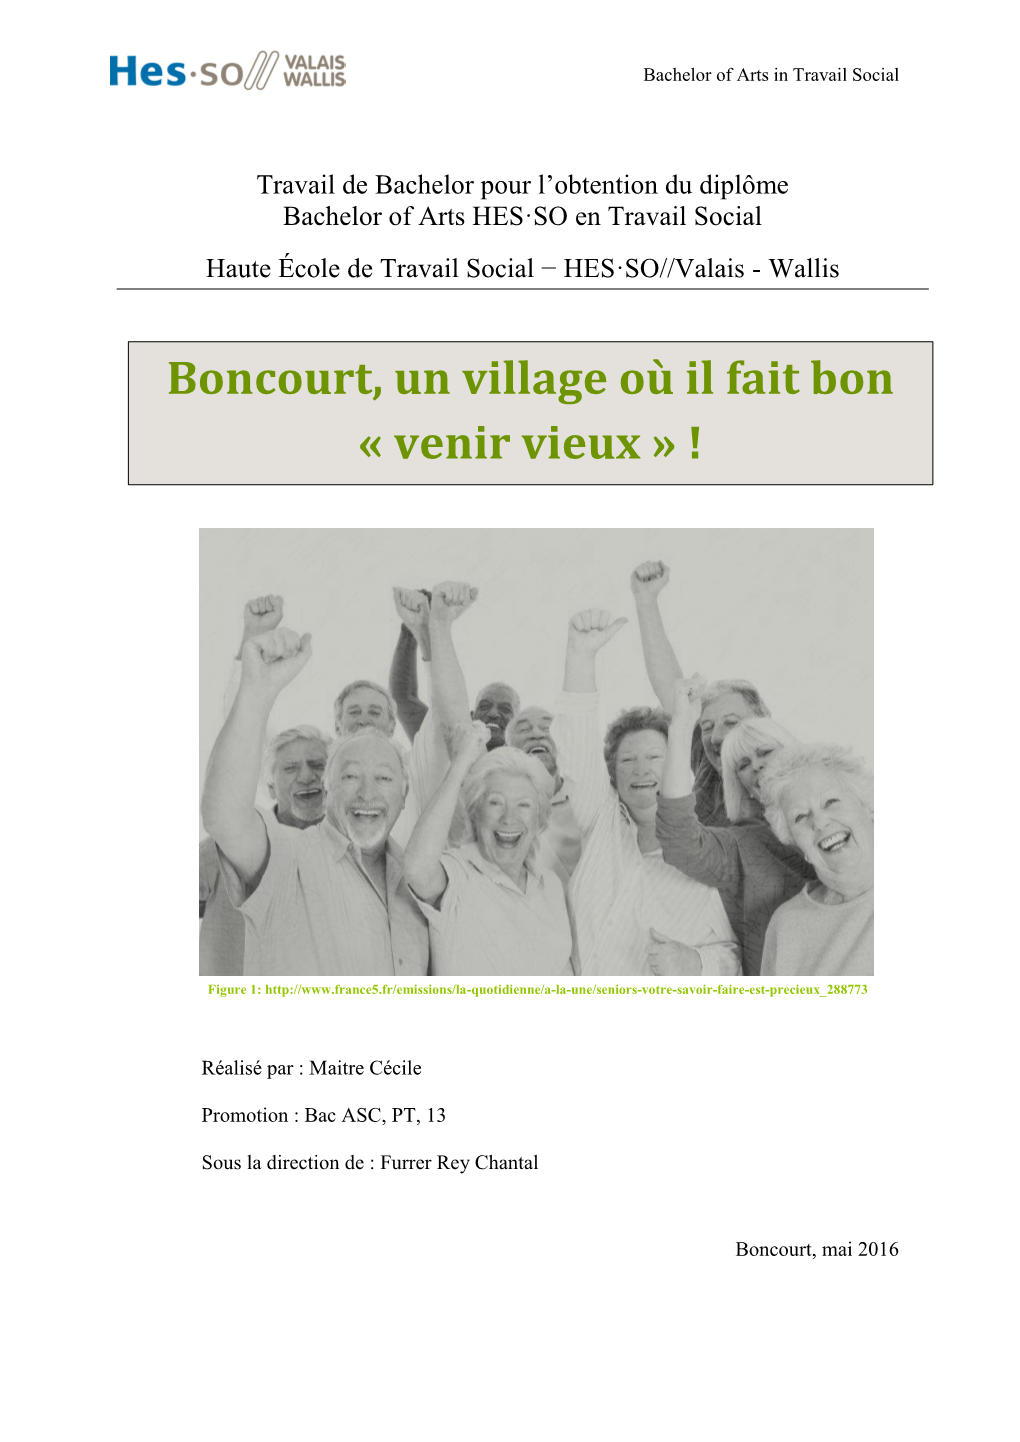 Boncourt, Un Village Où Il Fait Bon